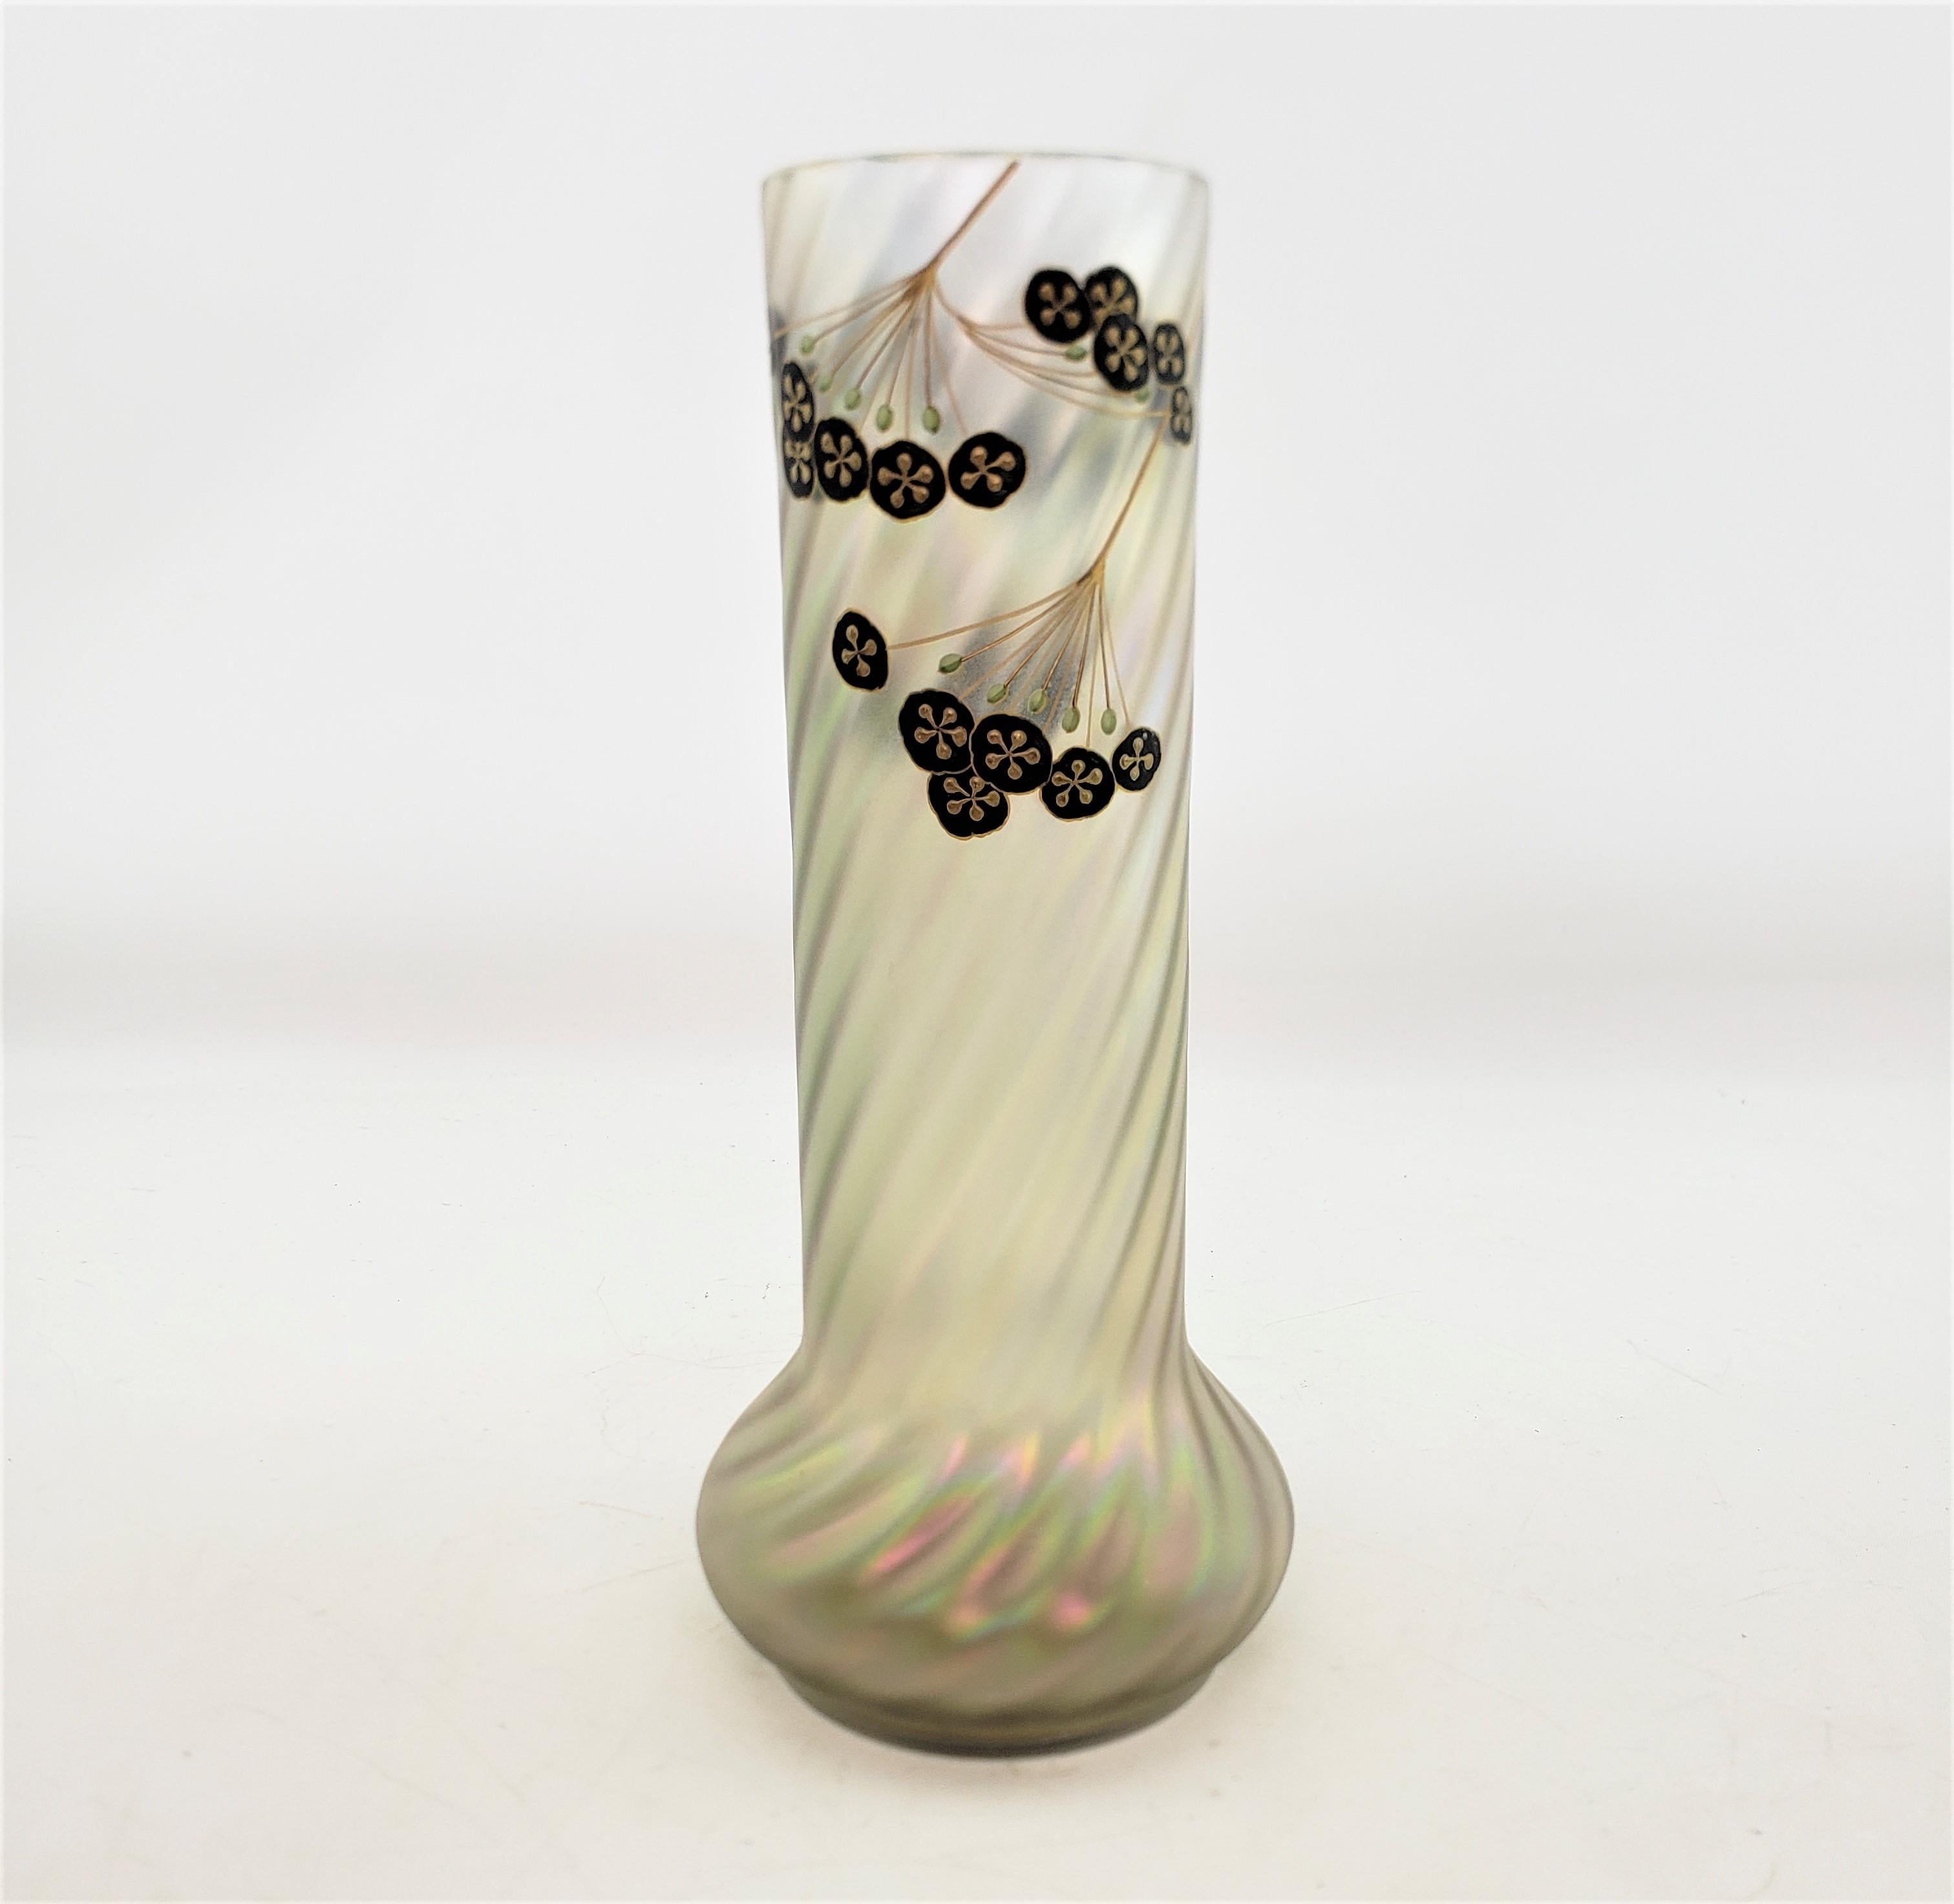 Ce vase en verre d'art ancien n'est pas signé, mais on présume qu'il provient d'Autriche et qu'il date d'environ 1900. Il est réalisé dans le style Art nouveau de l'époque. Le vase est en verre crème tourbillonné opaque avec un éclat irisé et une